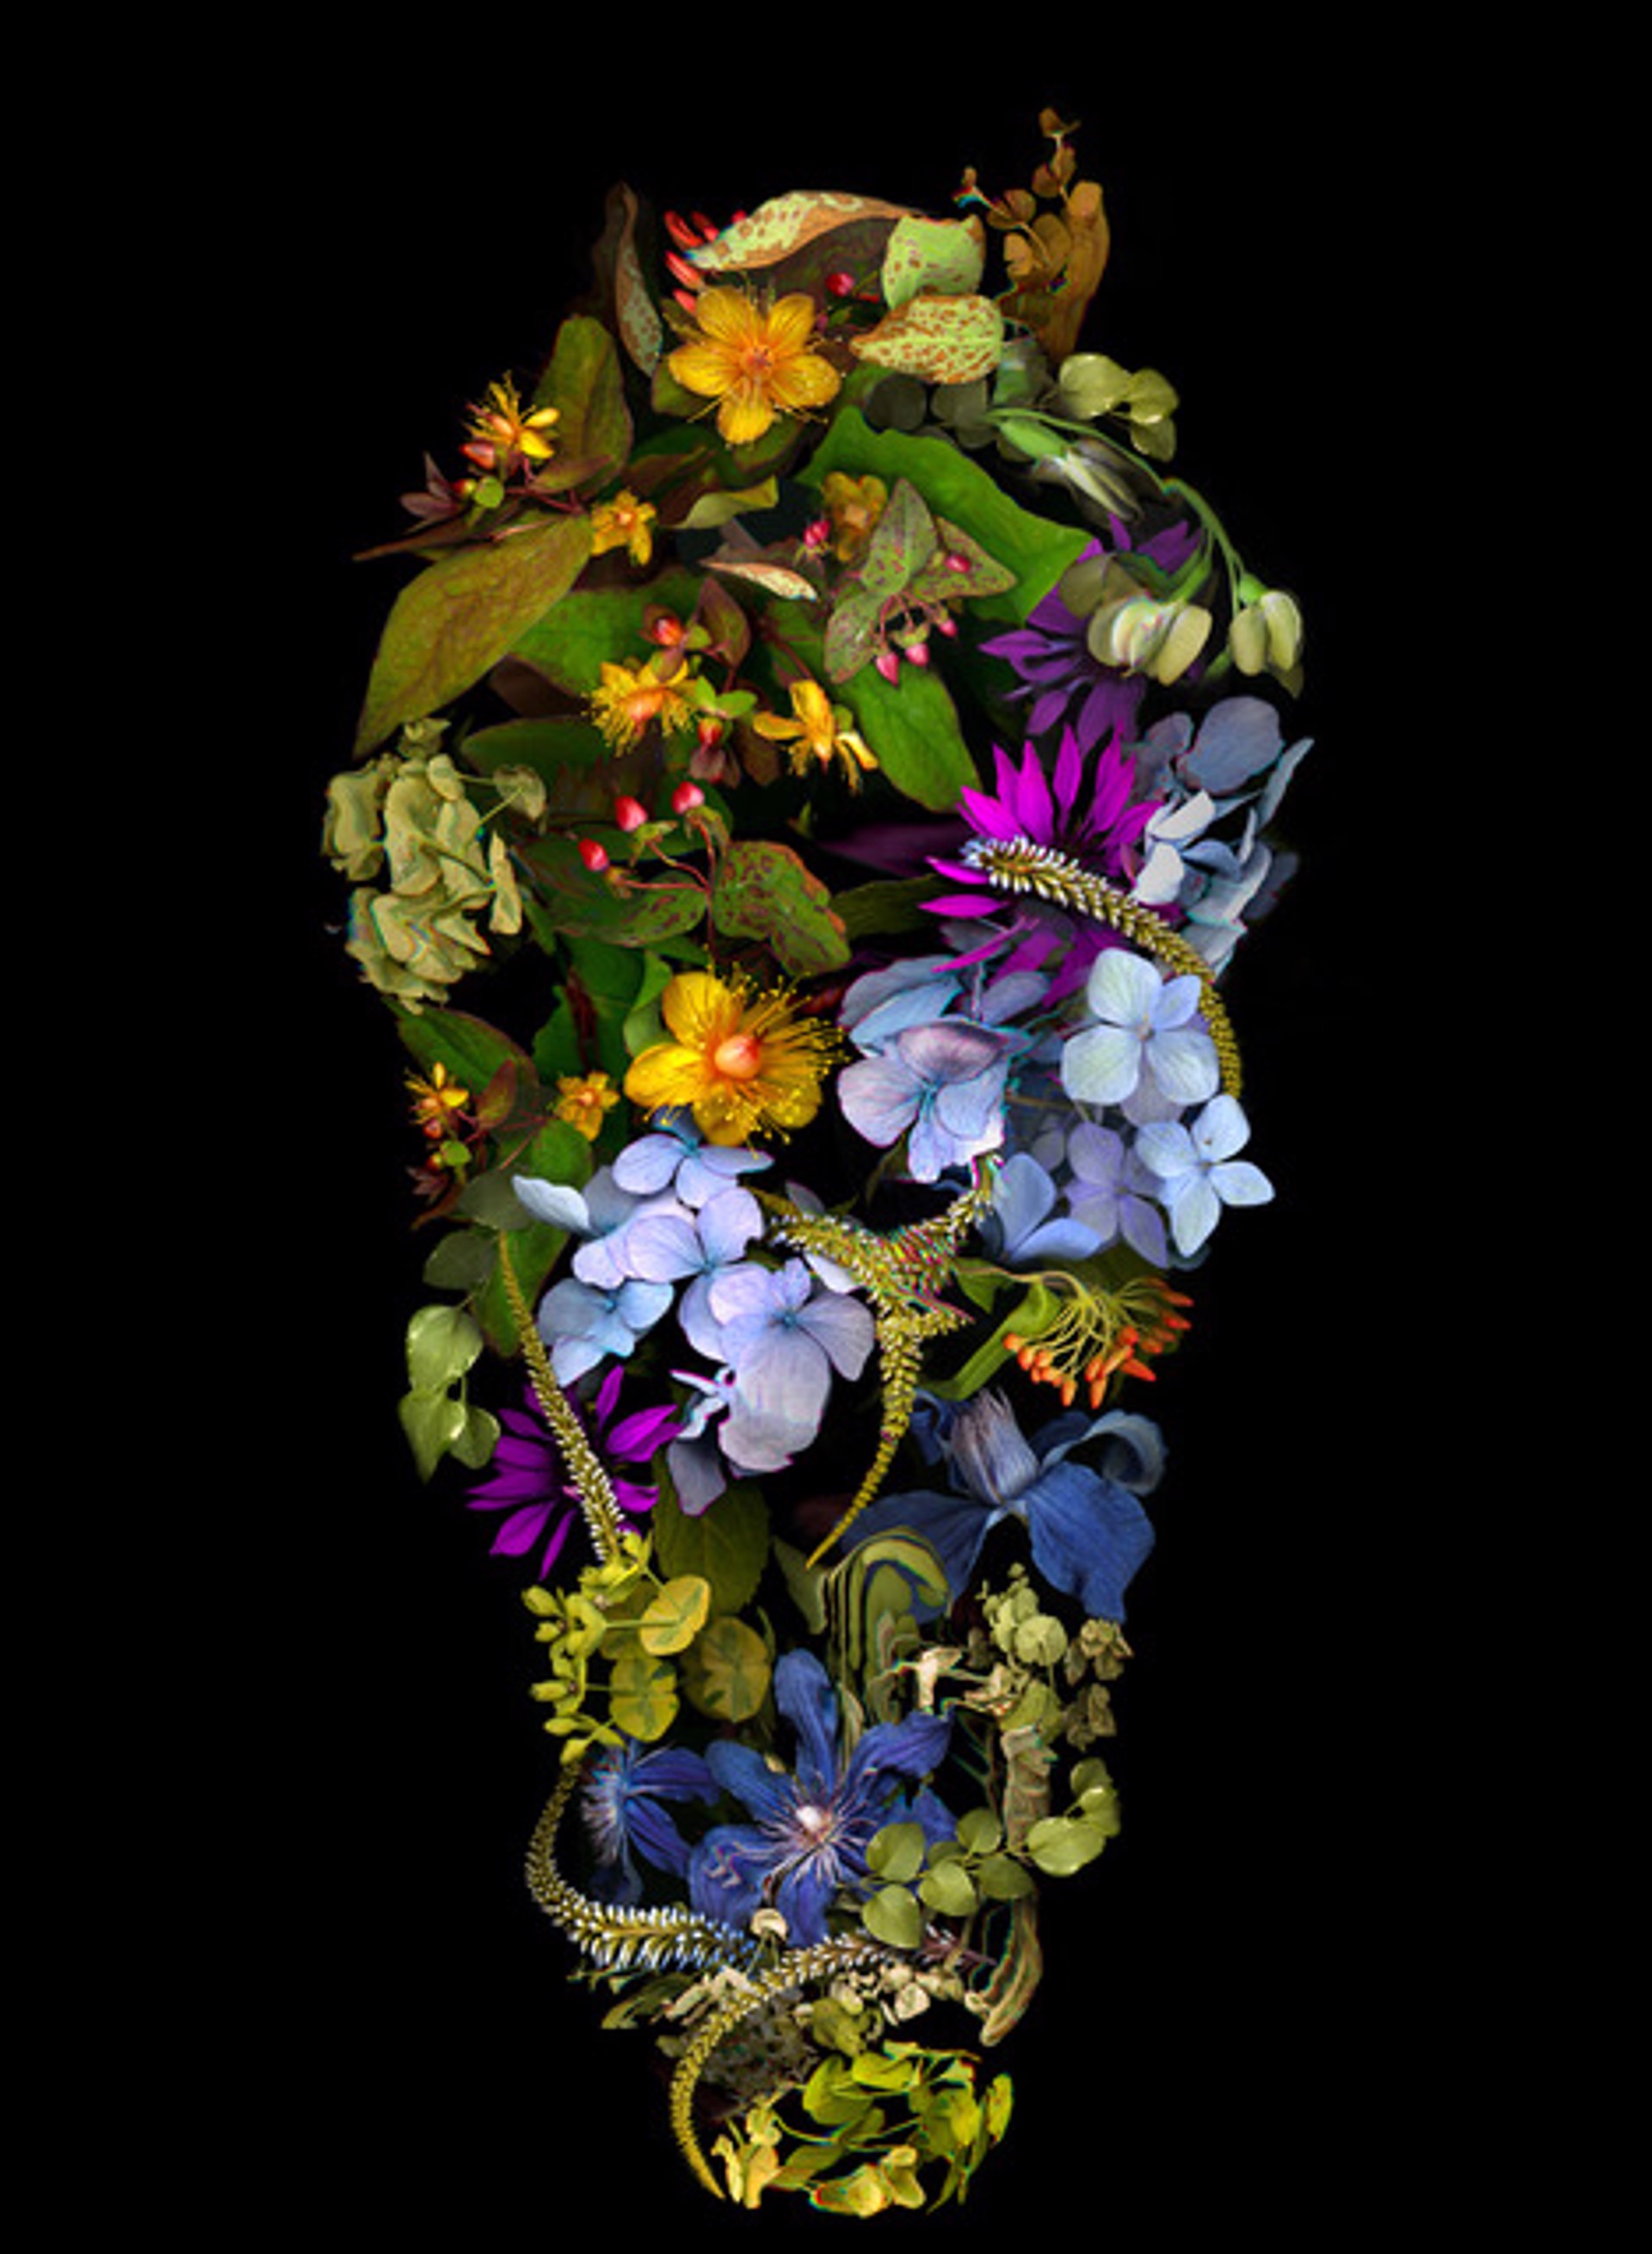 Untitled Vase 03 by Kate Blacklock